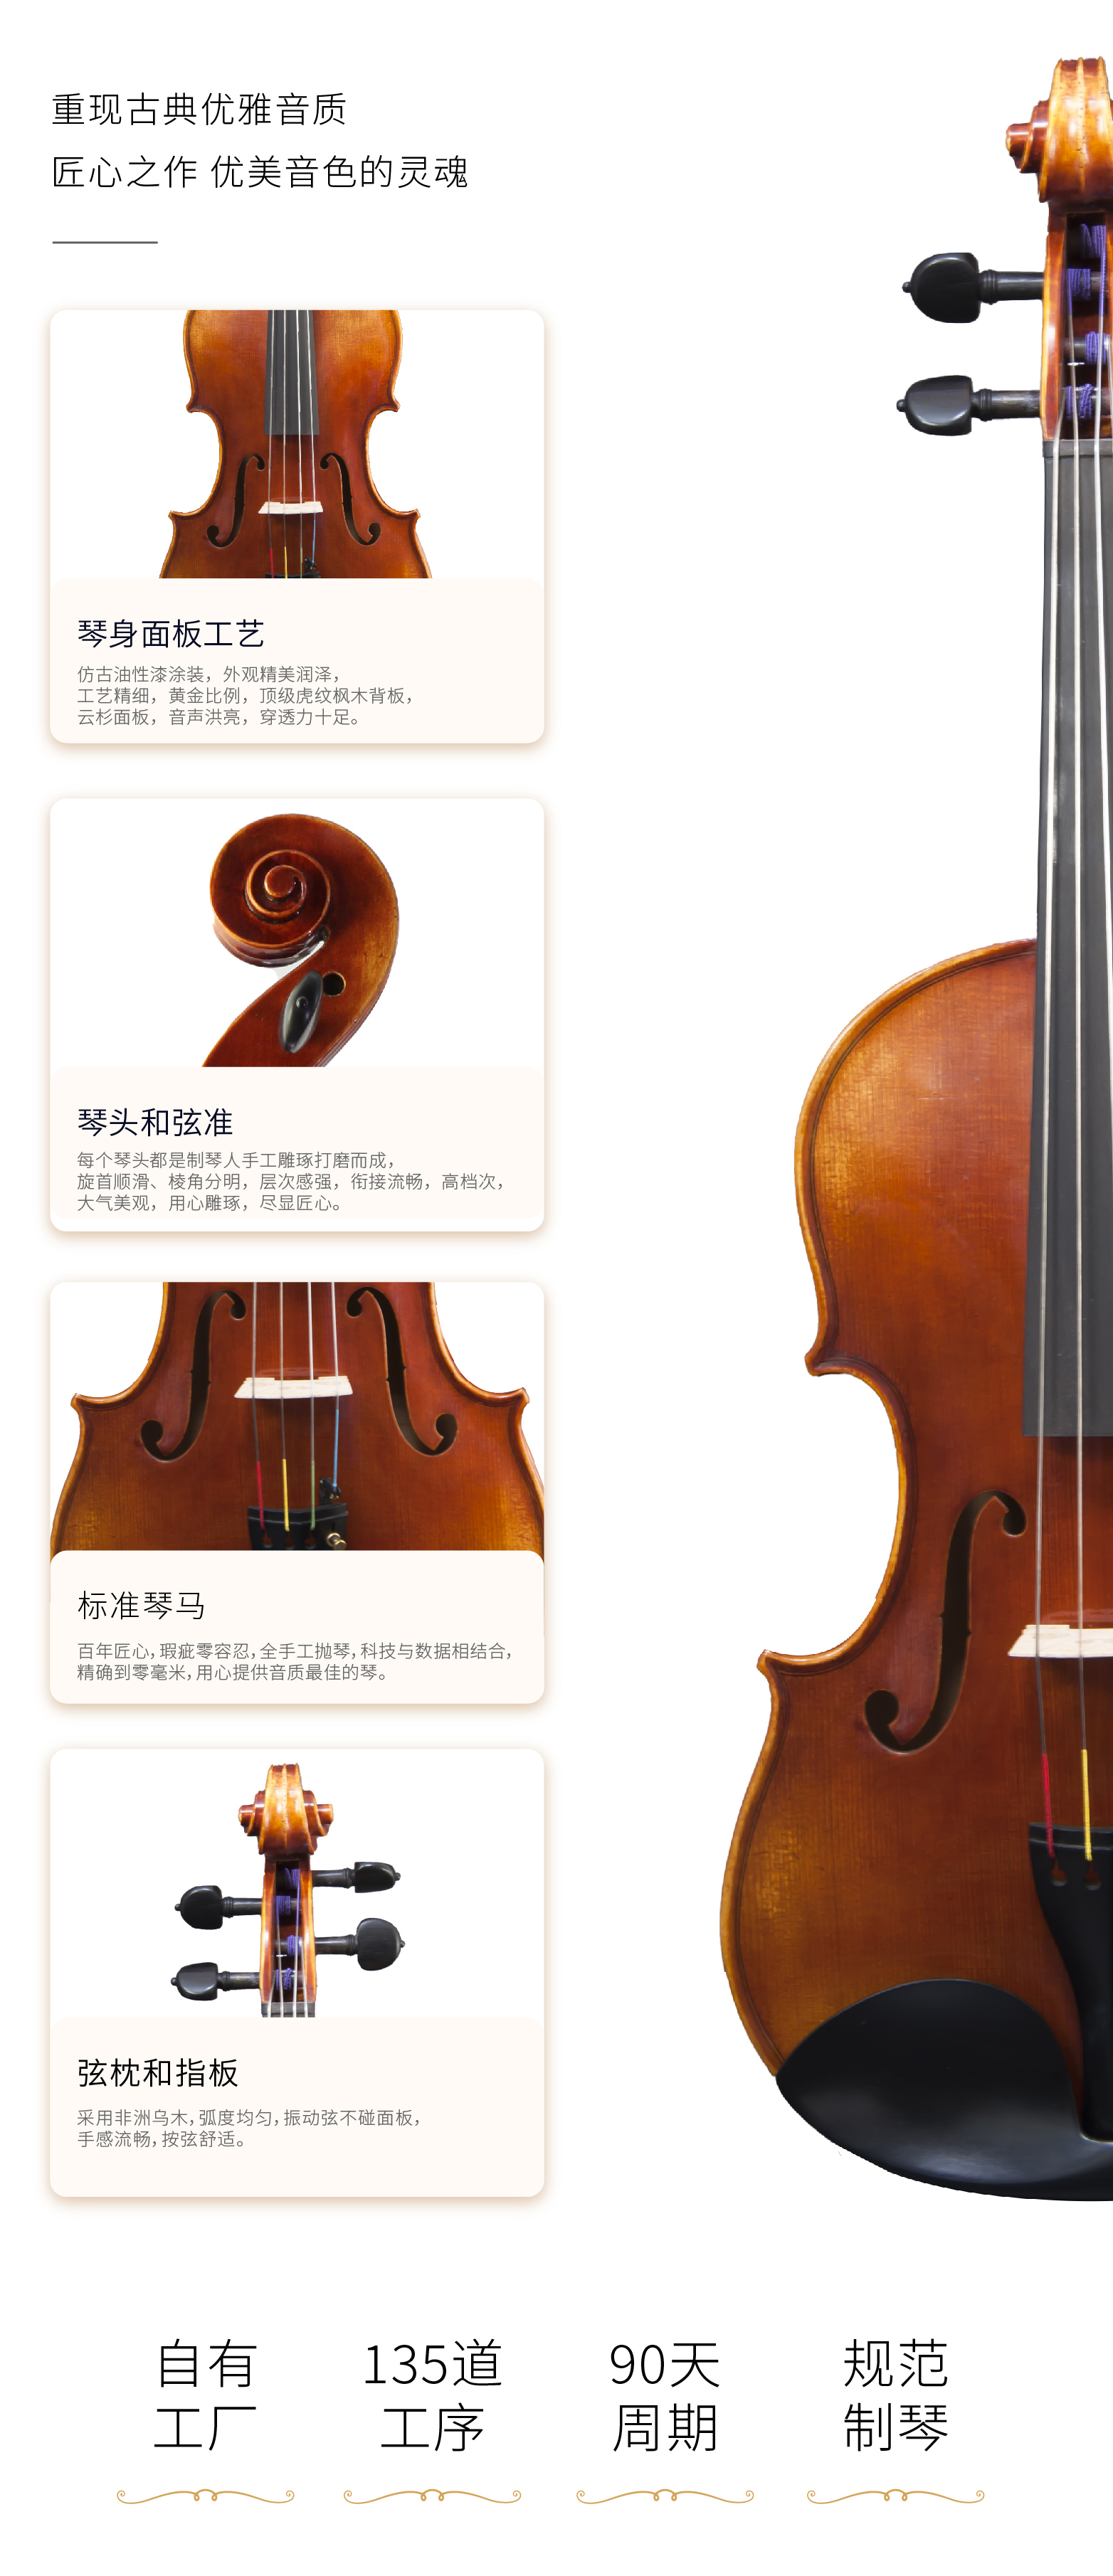 熙珑乐器专营店-详情-v1-2_SA880中提琴_PC-副本-2_07.jpg